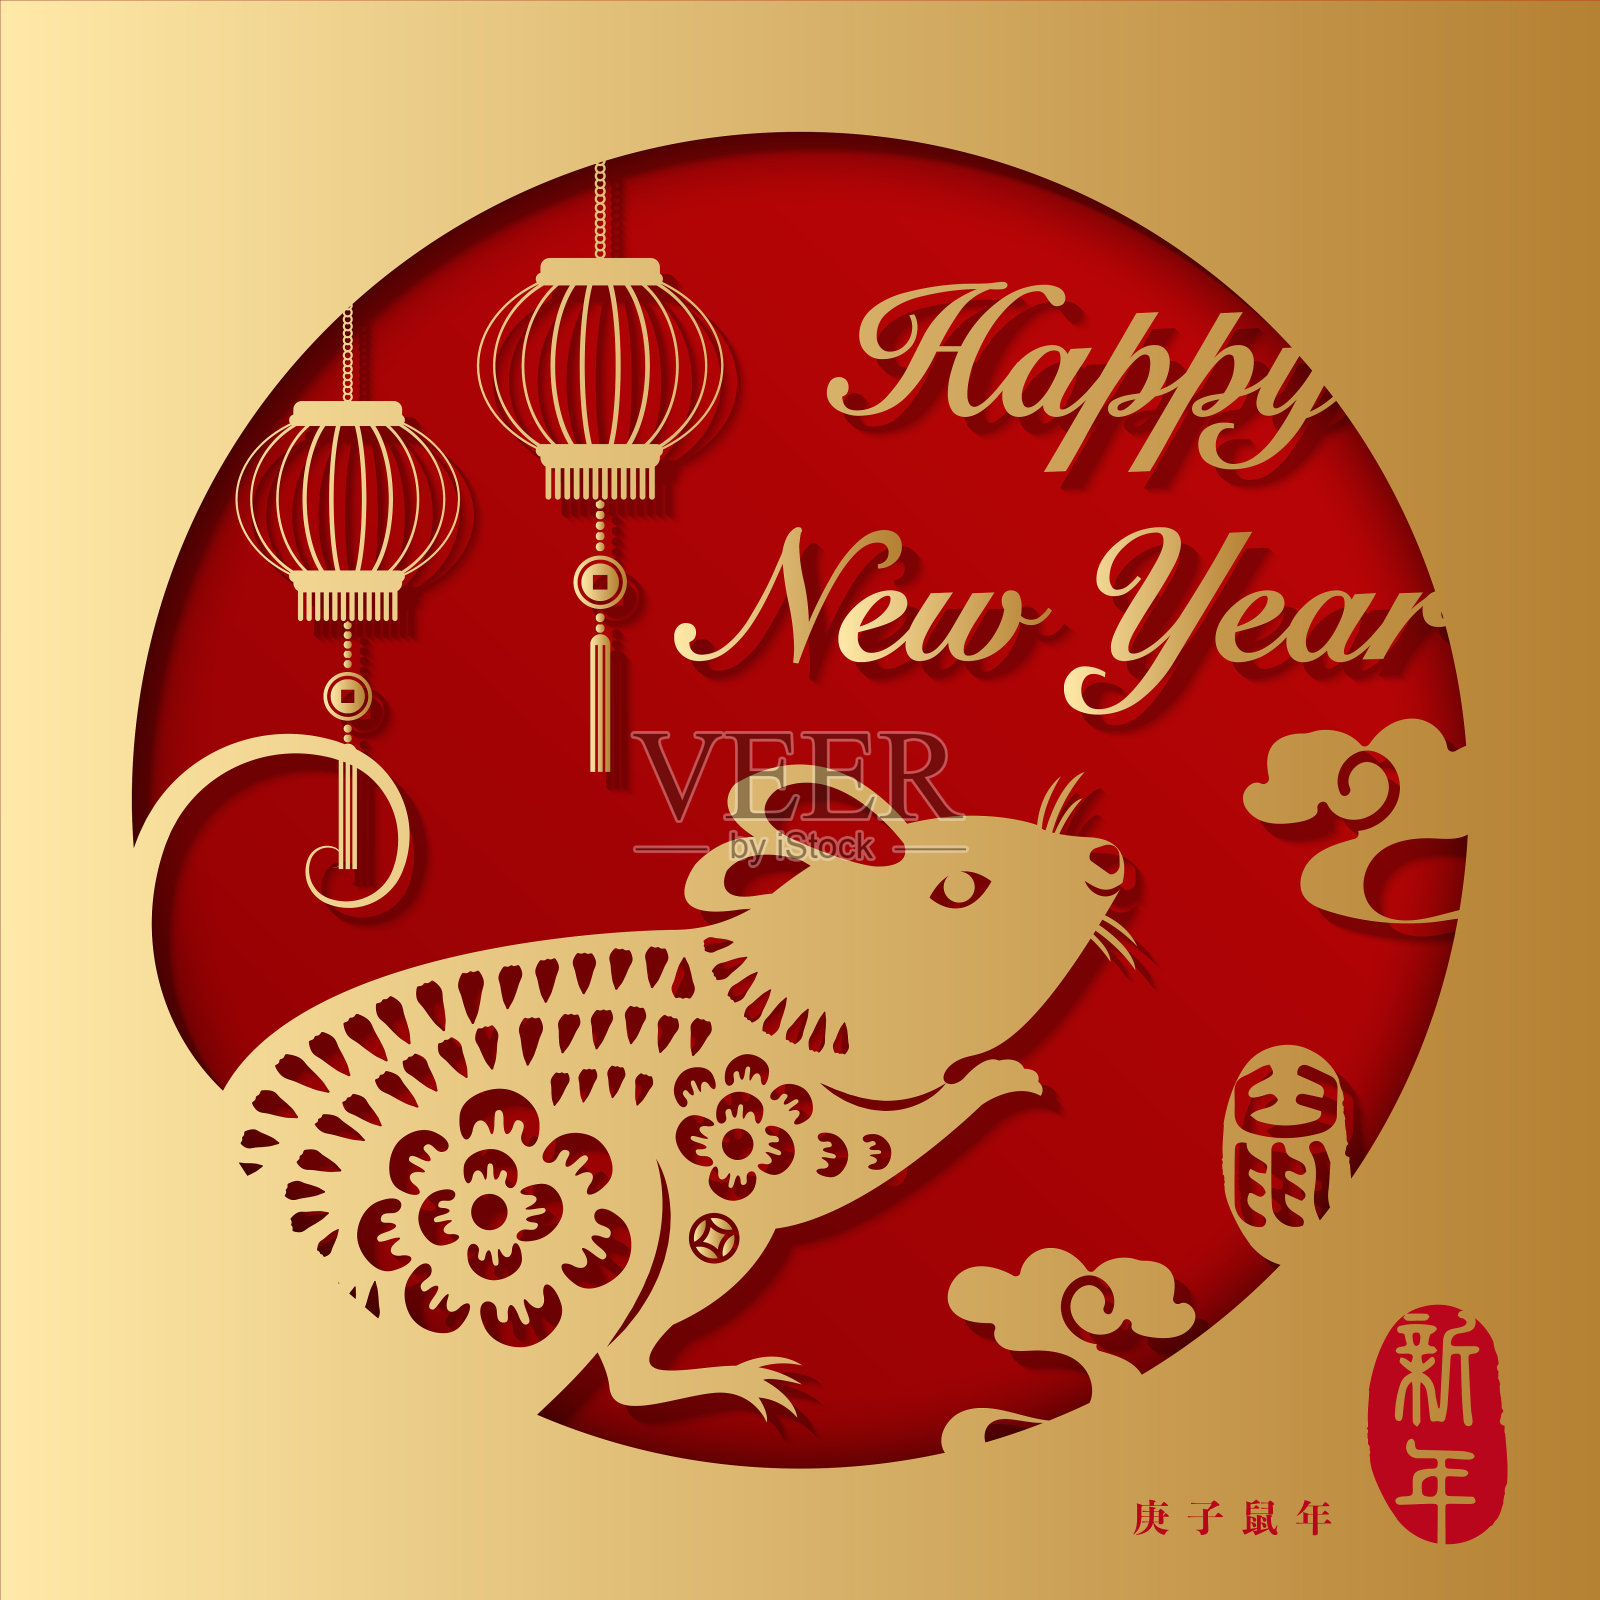 2020年金relief鼠灯和云新年快乐。中文翻译:老鼠和新年。设计模板素材